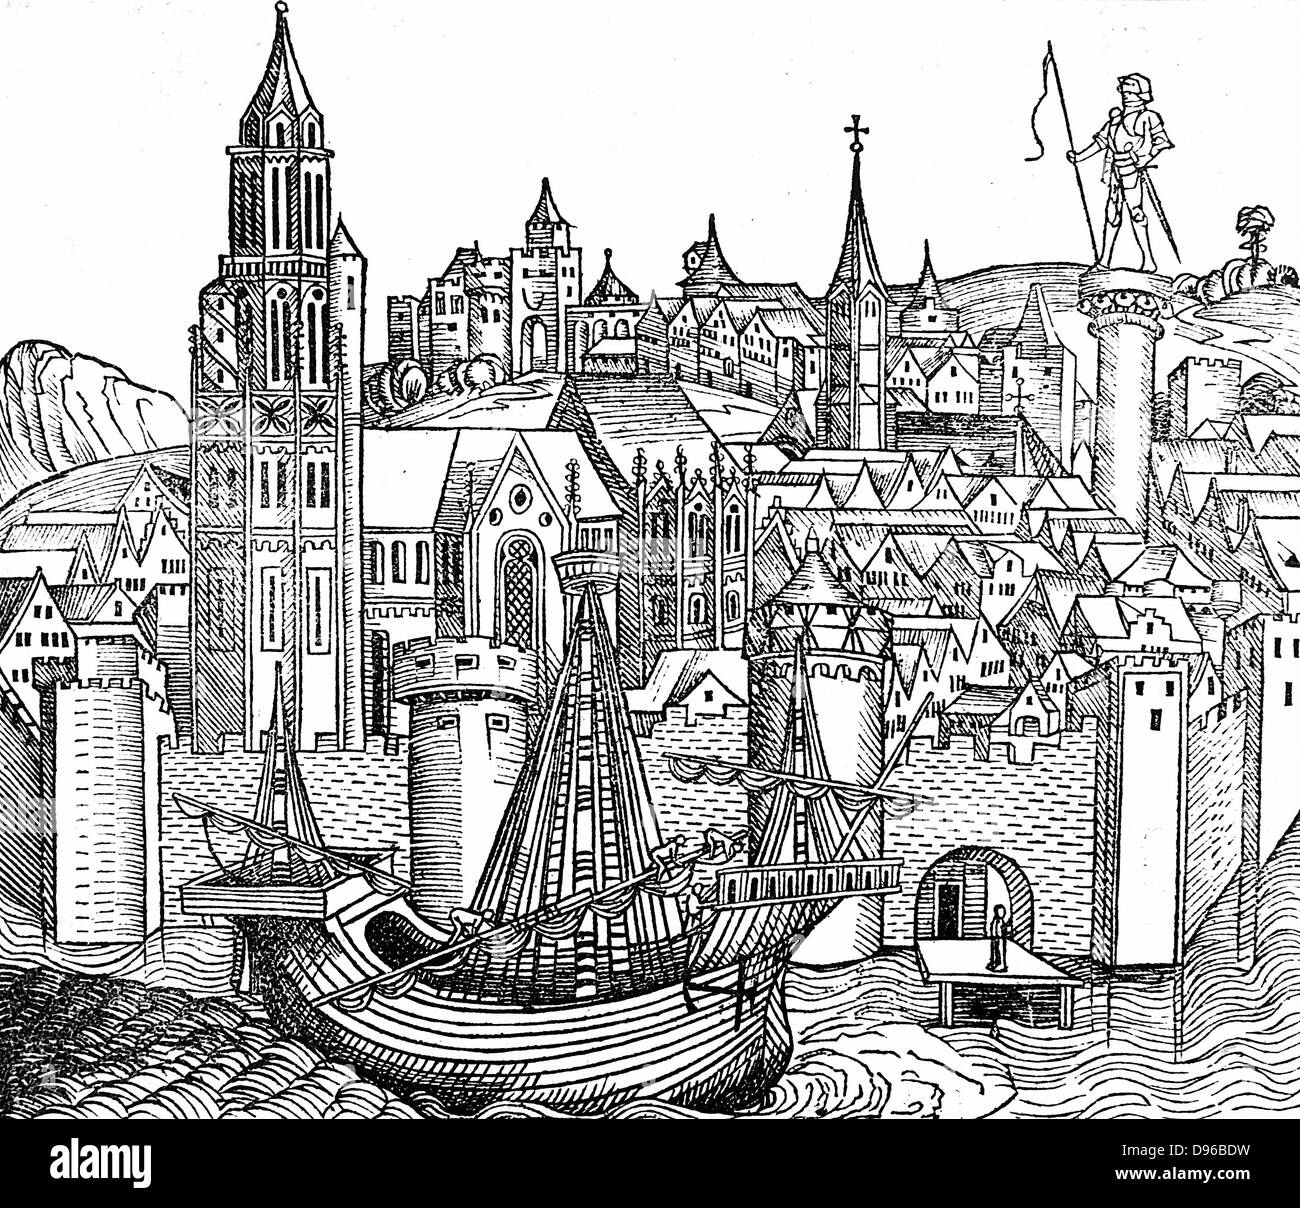 Vista della città fortificata con un dente, un tipo di nave a vela in primo piano. Watergate in basso a destra. Da Hartman Schedel "Liber chronicarum mundi' (Cronaca di Norimberga), Norimberga, 1493, xilografia. Foto Stock